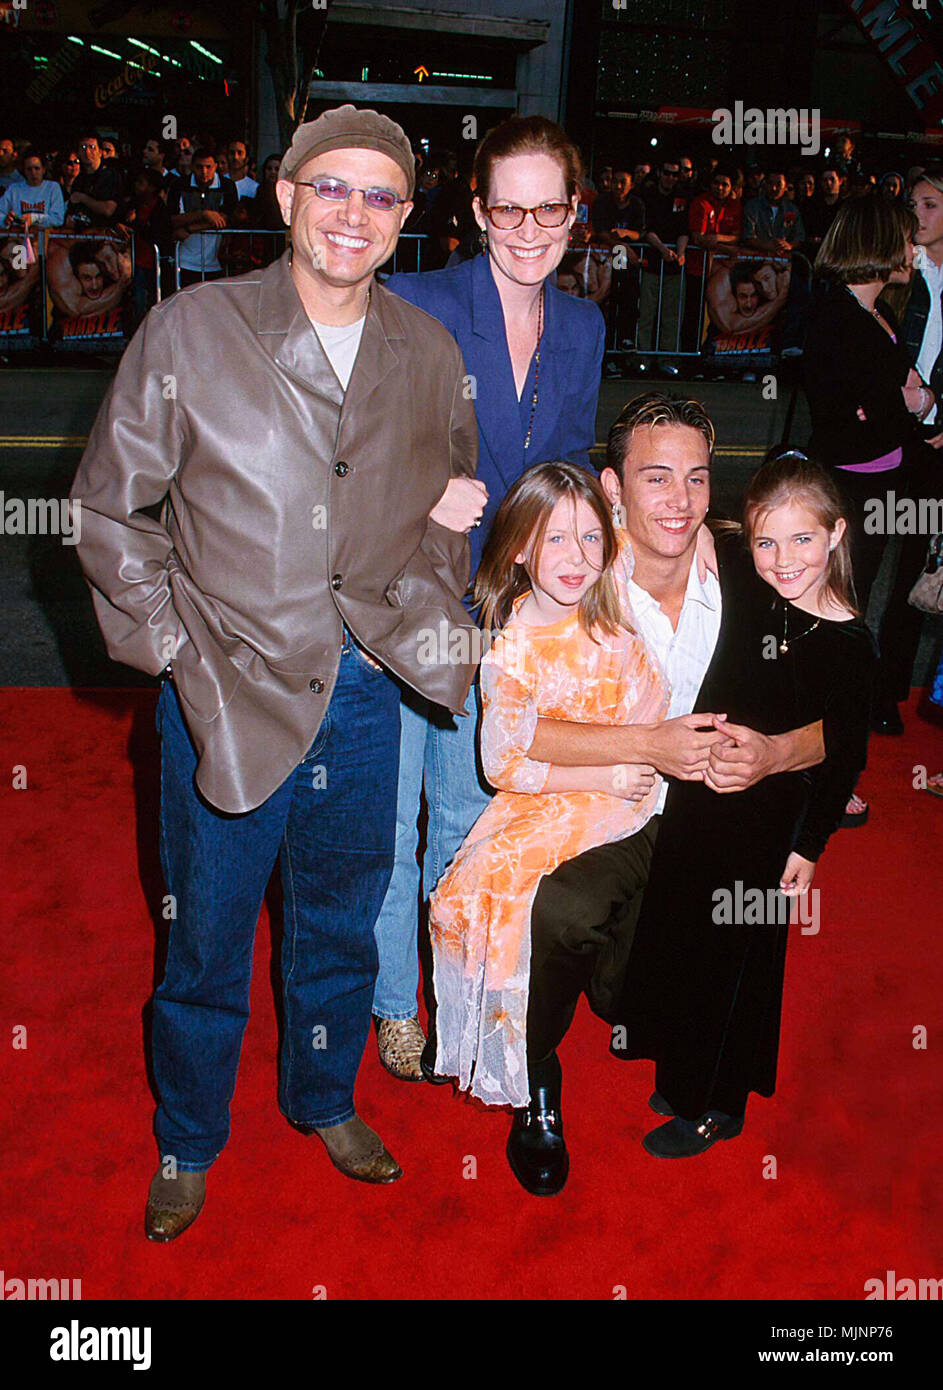 Joe pantoliano mit seiner familie Fotos und Bildmaterial in hoher